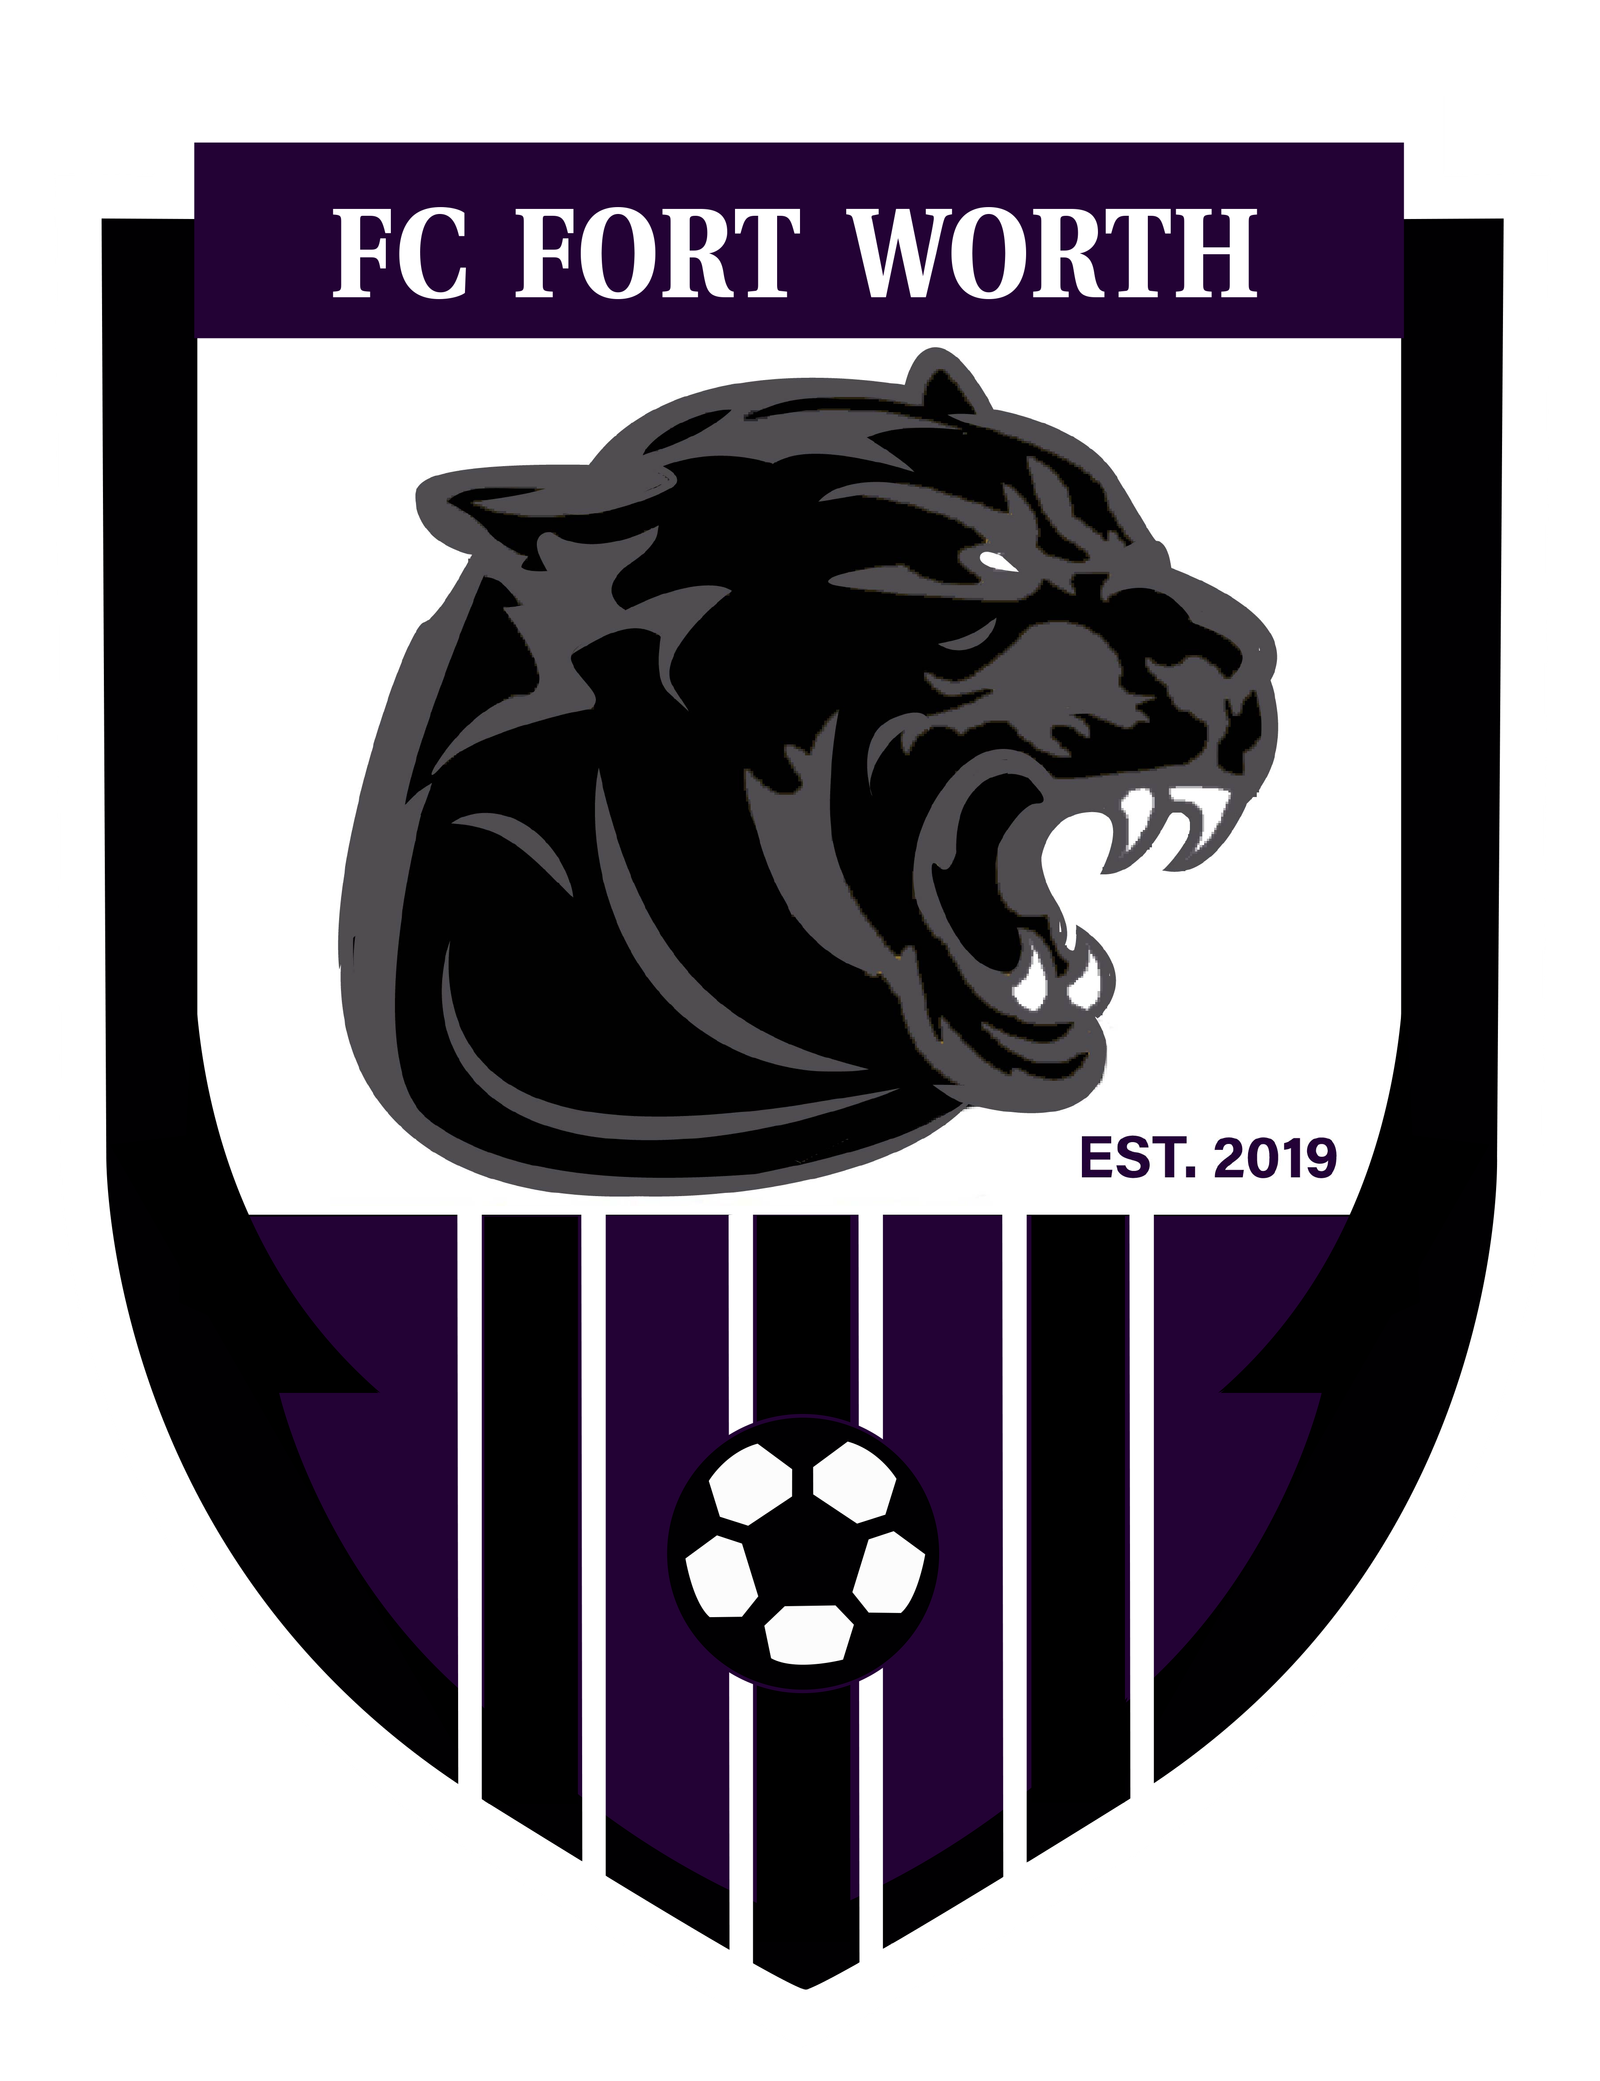 FC FORT WORTH